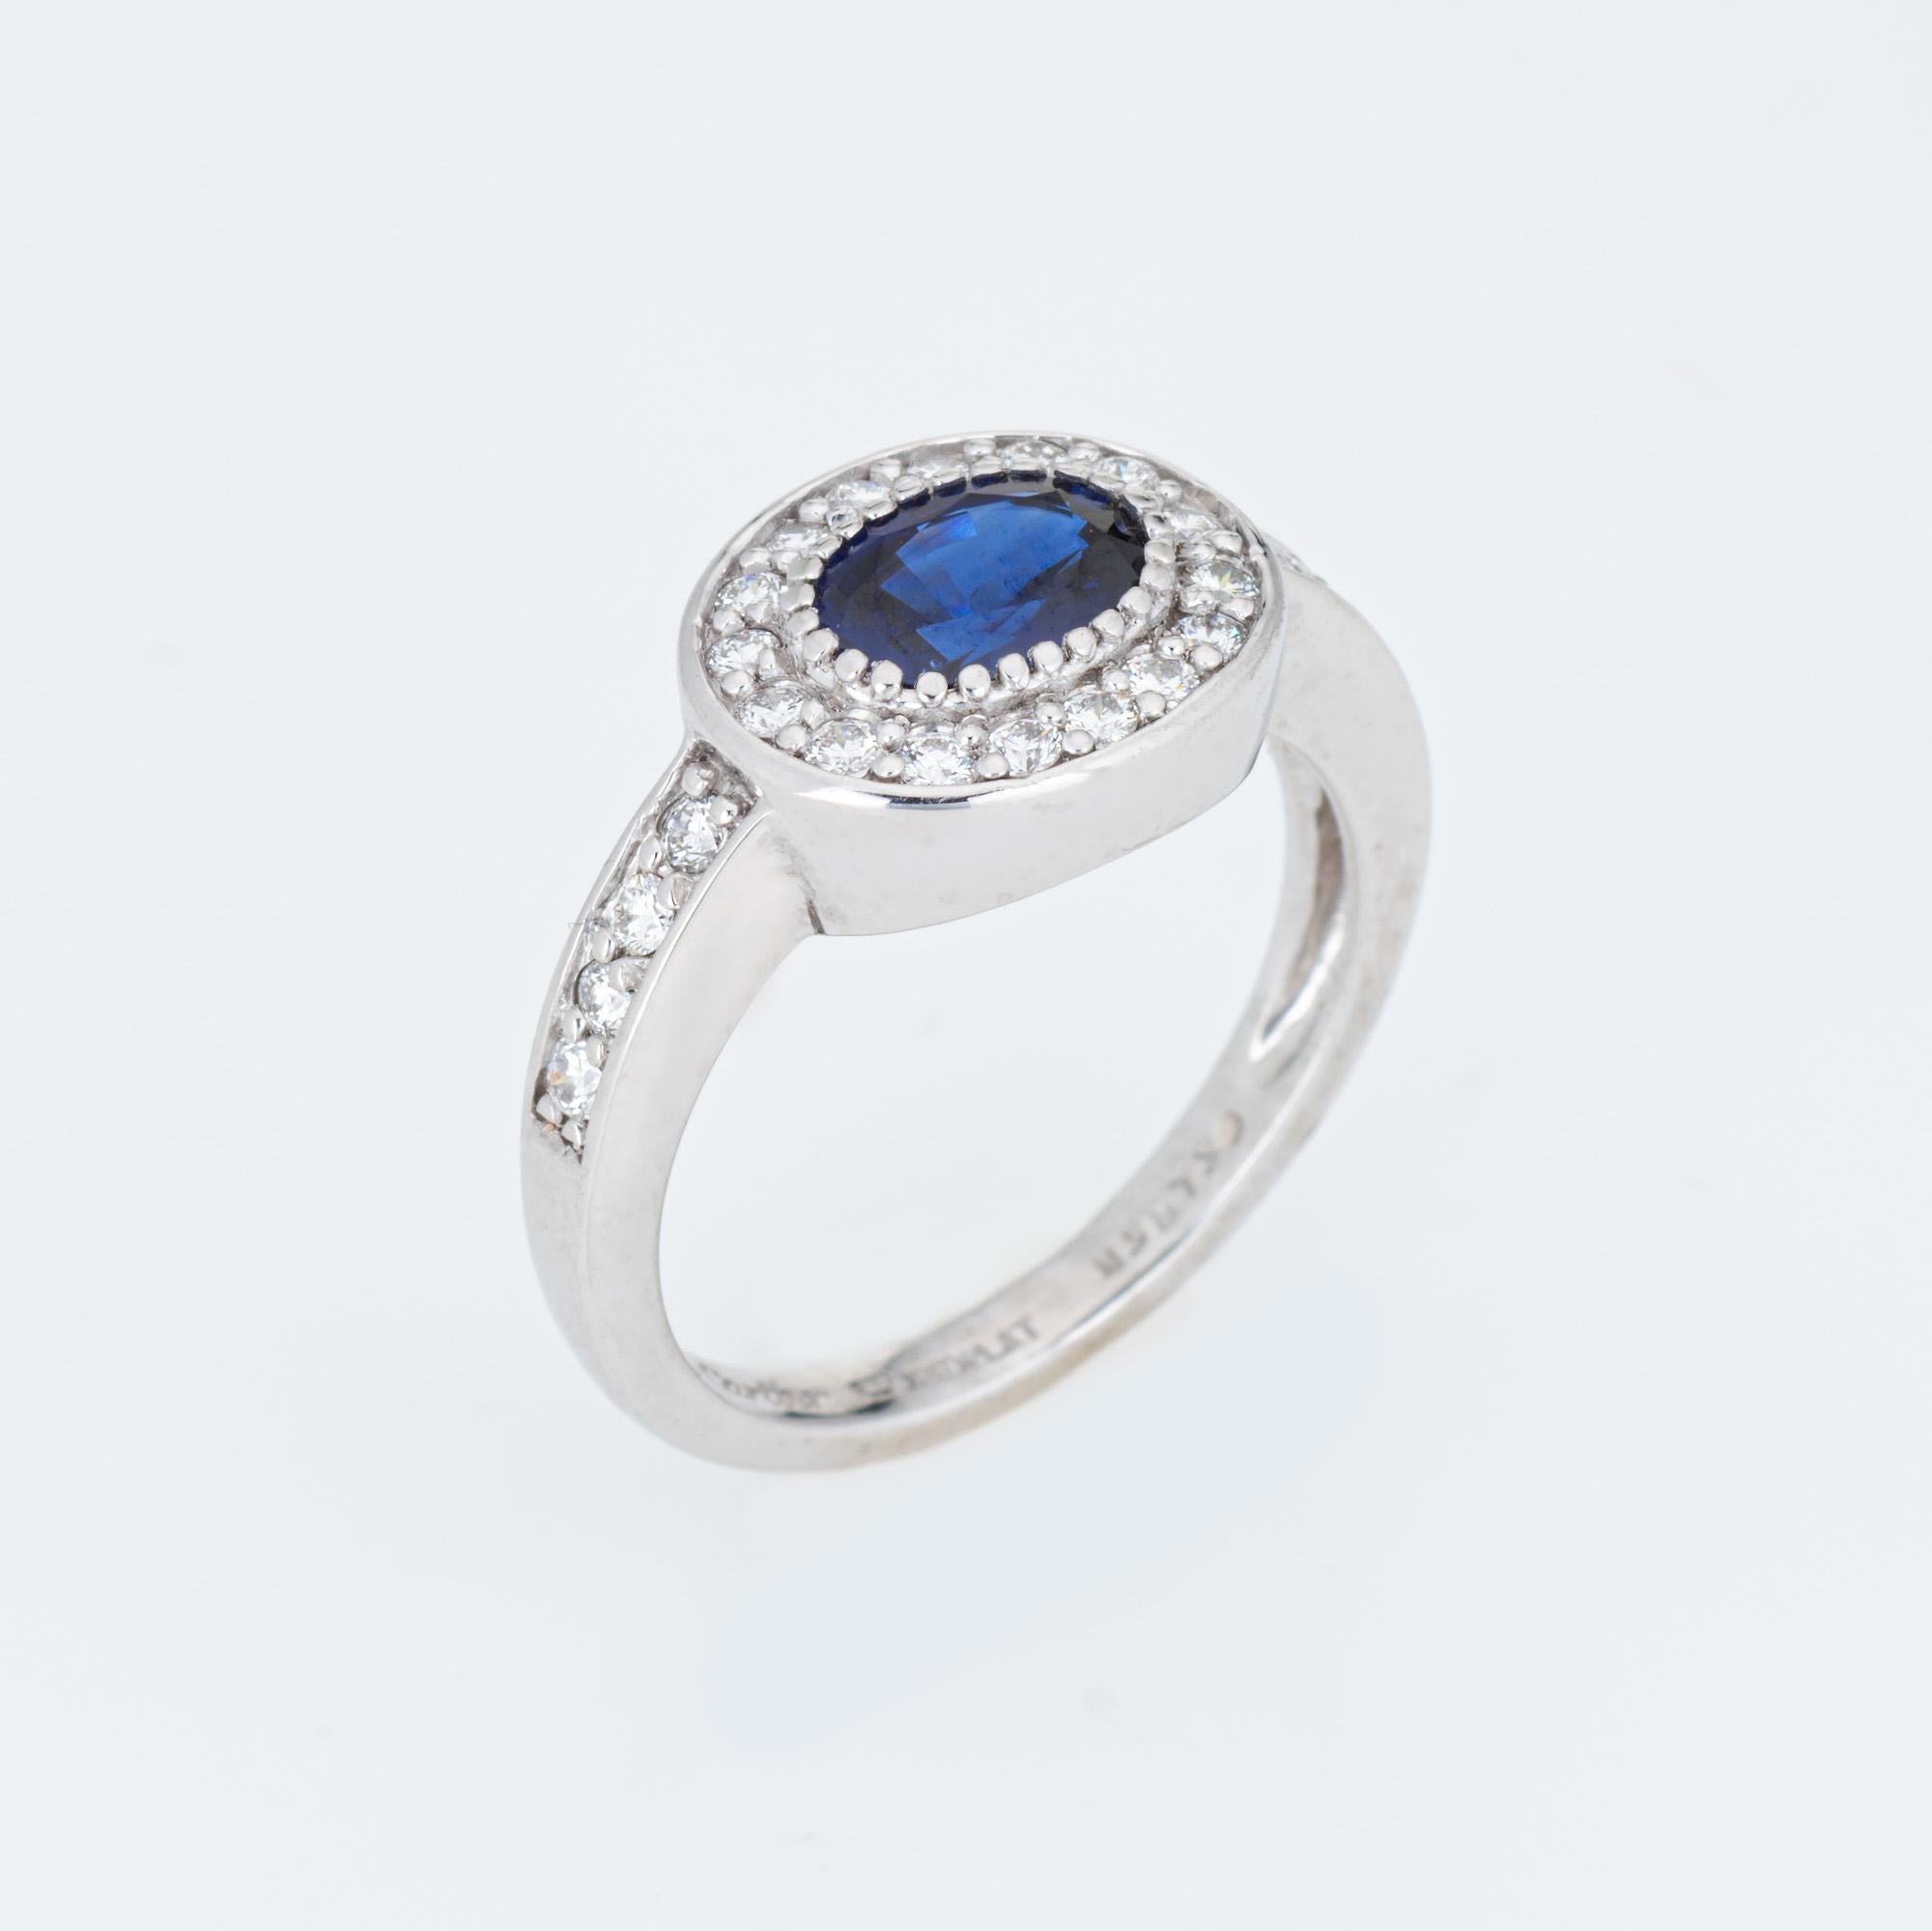 Pre-owned Cartier blauen Saphir & Diamant-Ring in 900 Platin gefertigt.  

Der ovale, facettierte blaue Saphir misst 6 mm x 4 mm und ist mit 24 geschätzten Diamanten von 0,01 Karat besetzt. Das Gesamtgewicht des Diamanten wird auf 0,24 Karat